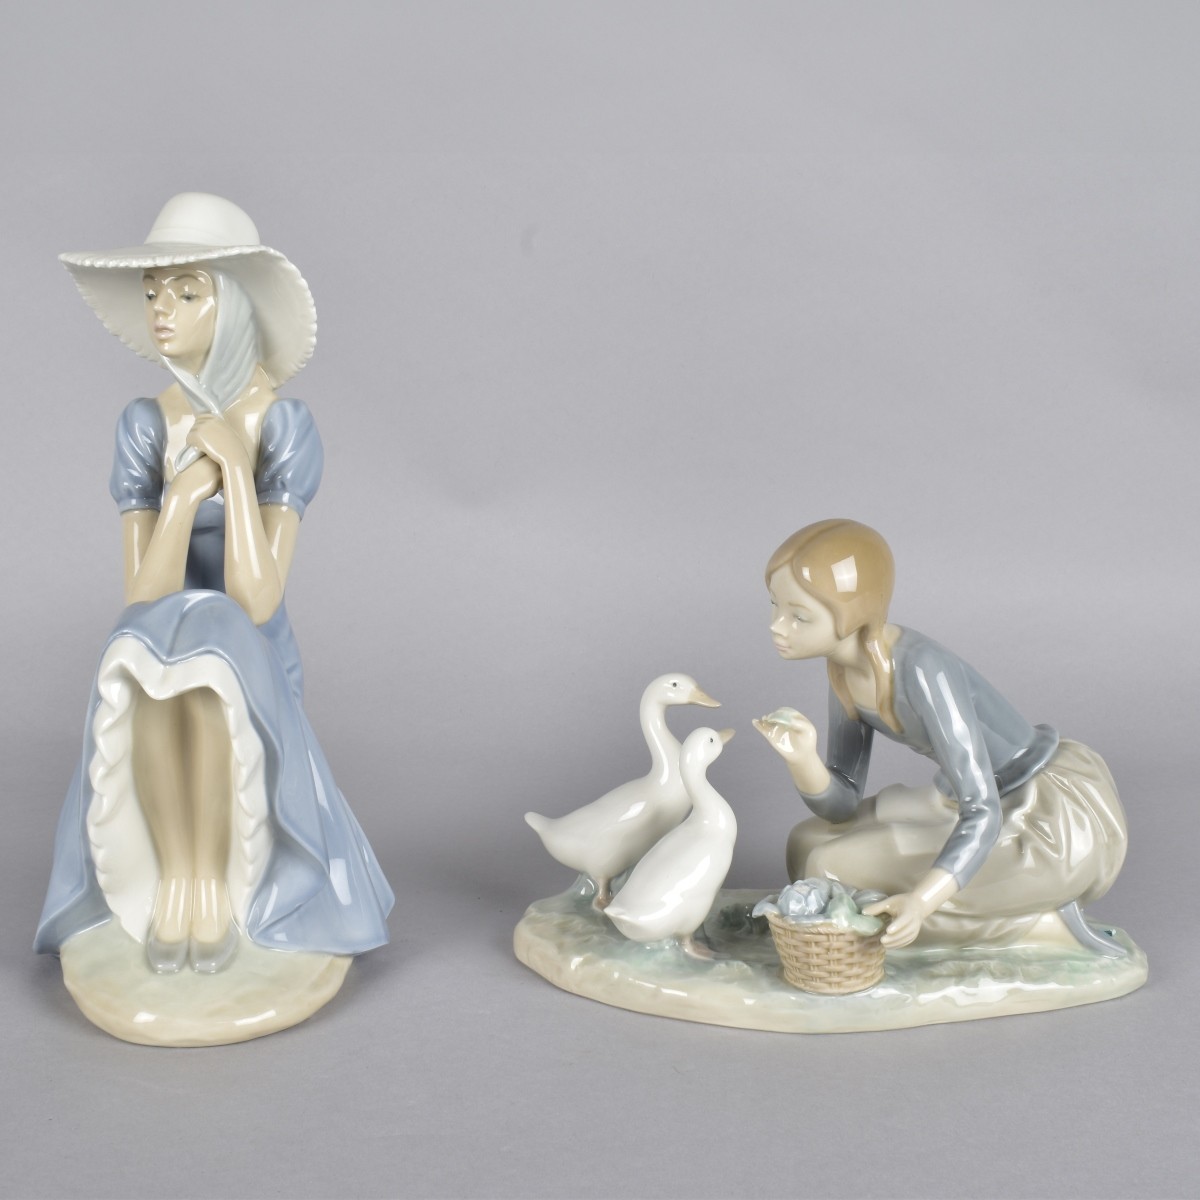 Two Vintage Glazed Porcelain Figurines